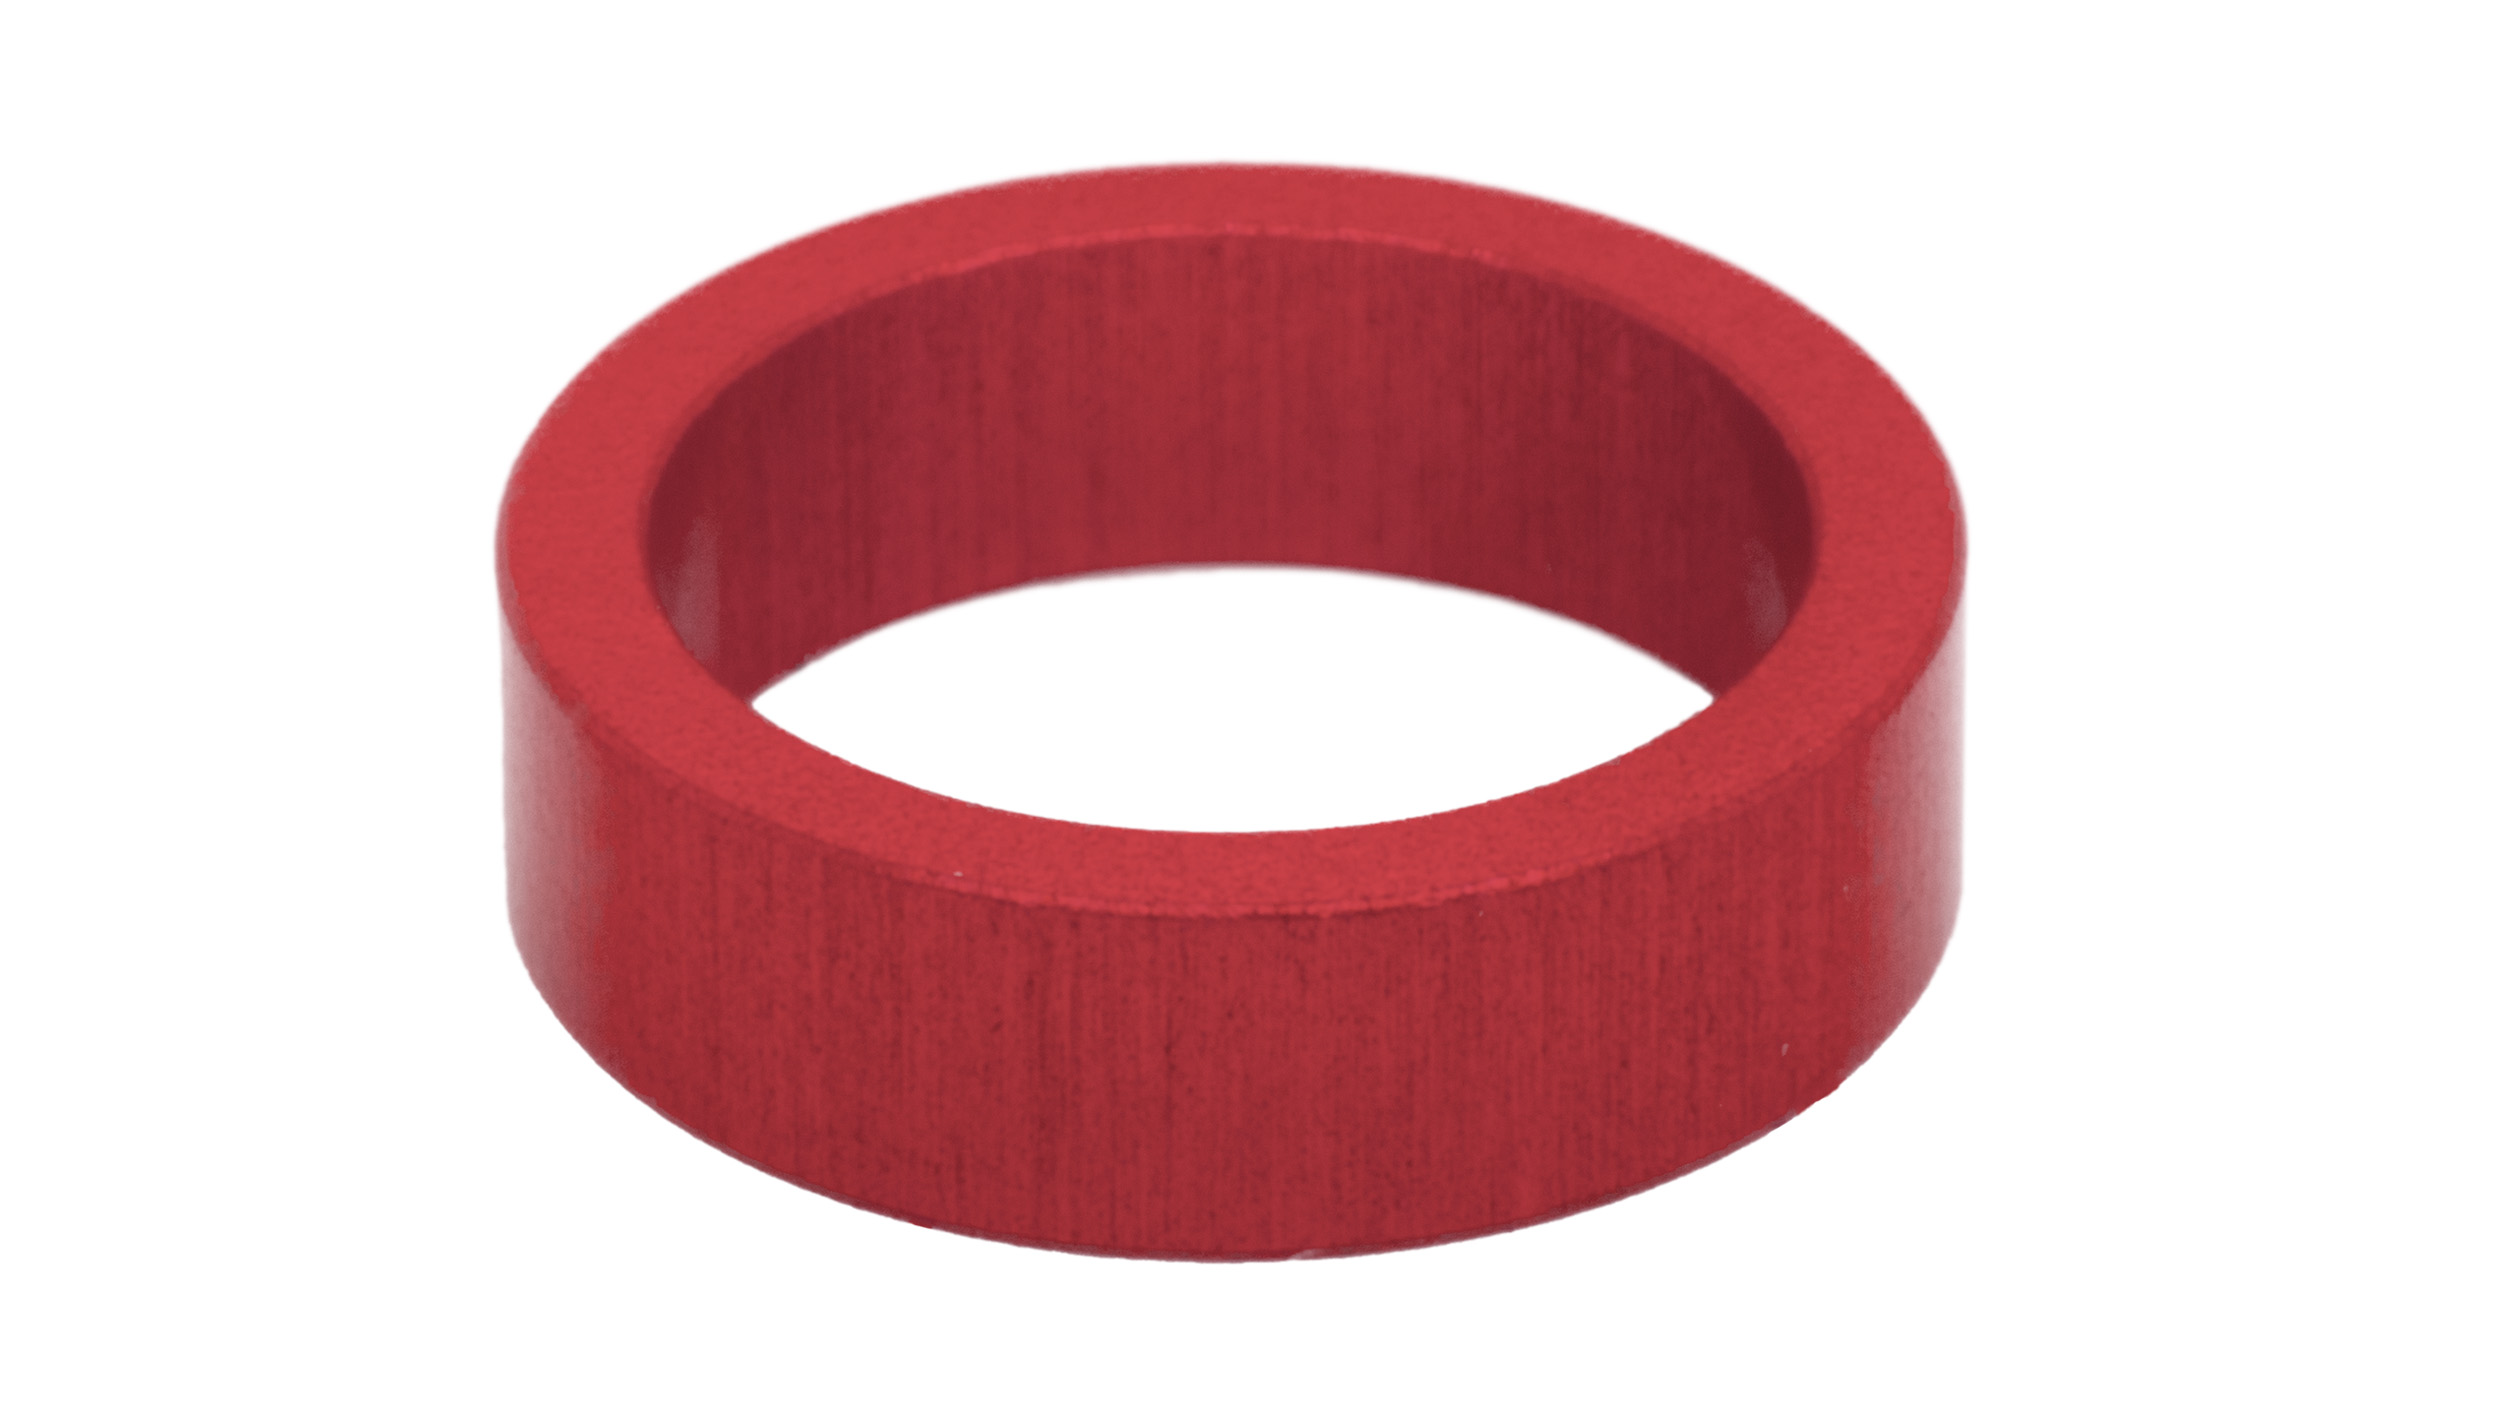 Identifikationsring, rot, für Petitpierre TR, Klinge 1,2 mm